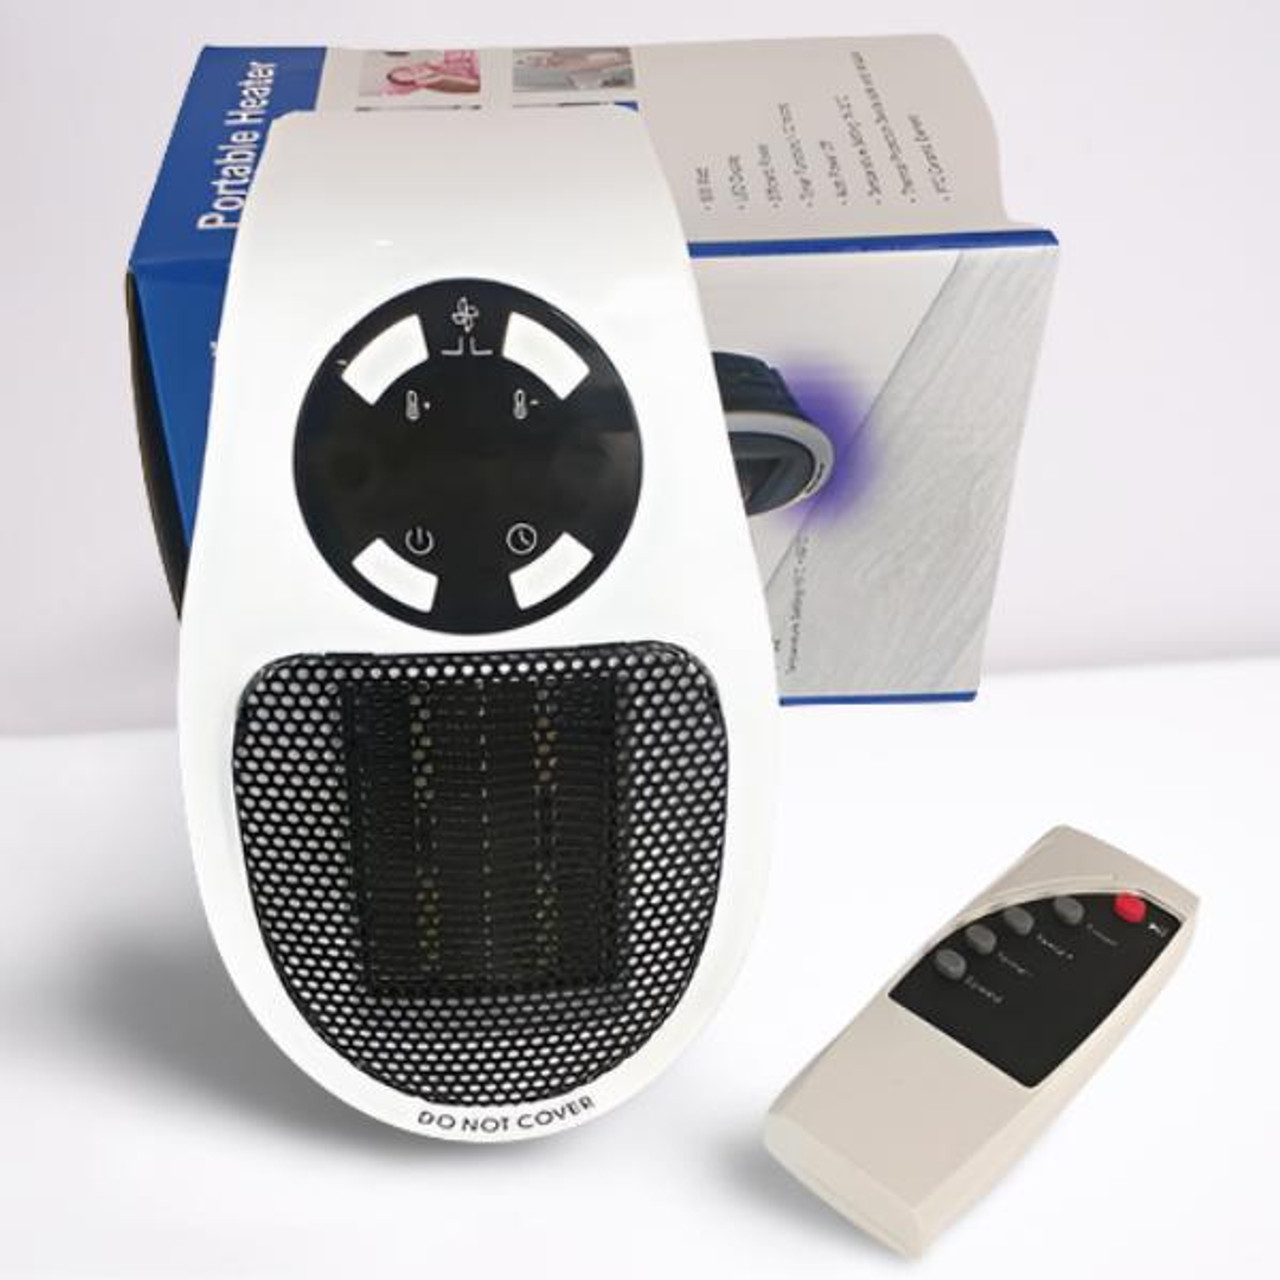 Chauffage durable Petit chauffage en céramique électrique personnel avec  thermostat for la surchauffe de bureau à domicile et la protection de  pointe